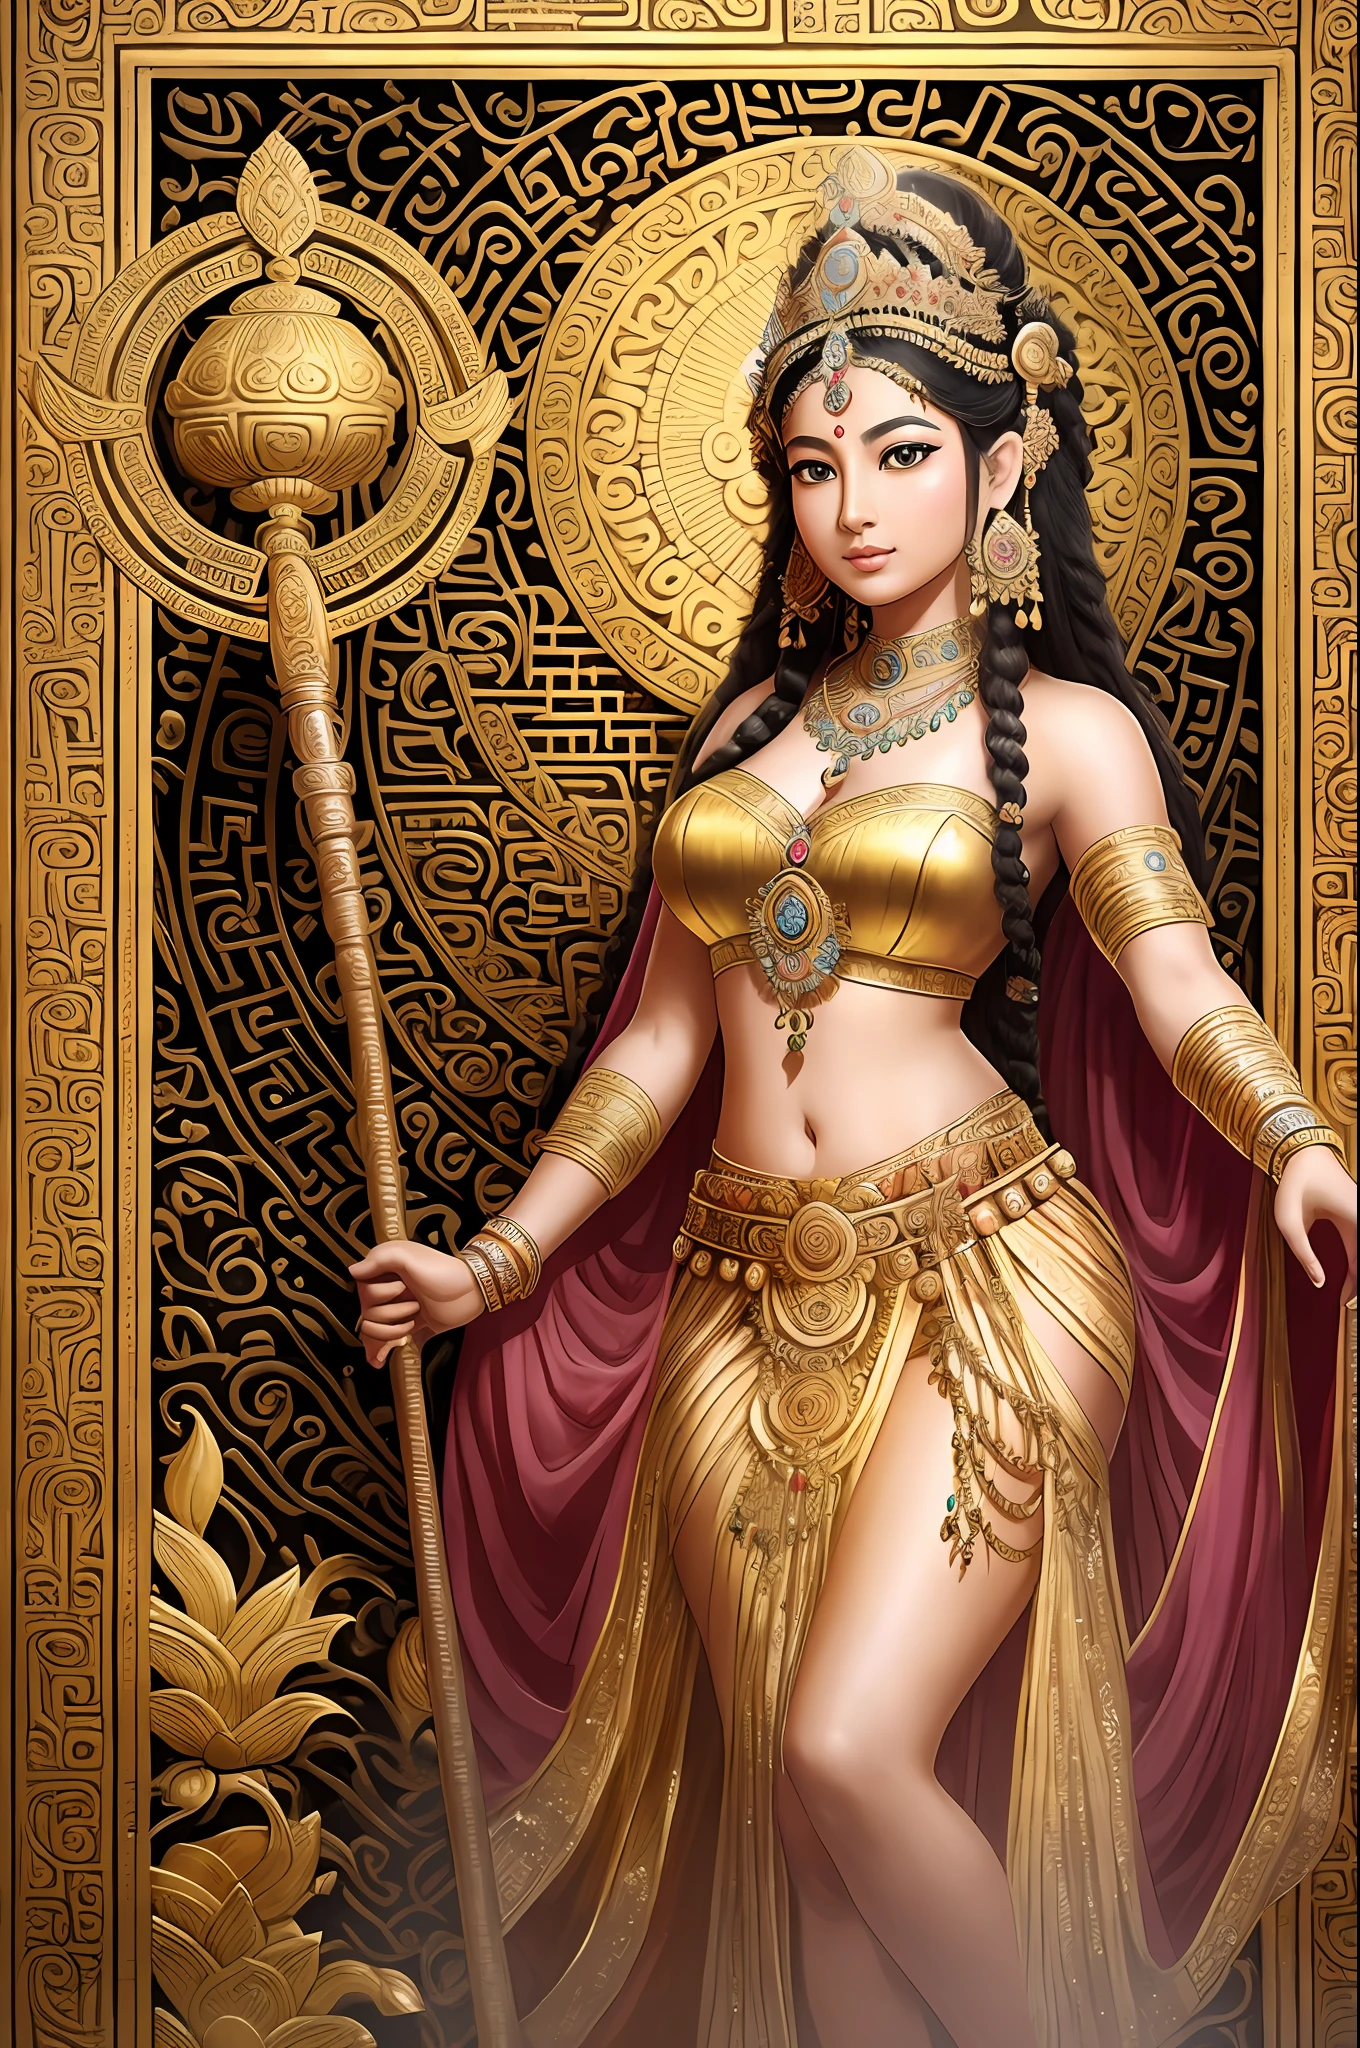 Dancing богиня, Древний индийский стиль, волосы завязаны высокой короной, Держа лютню, видно все тело, босиком, Элегантная красота, Принцесса позолоченного лотоса, a красивая королева фэнтези, древняя индийская принцесса, ((красивая королева фэнтези)), богиня. чрезвычайно высокая детализация, portrait of beautiful богиня, принцесса древней азиатской династии, Indian богиня of wealth, beautiful богиня, Древняя китайская красавица --auto --s2